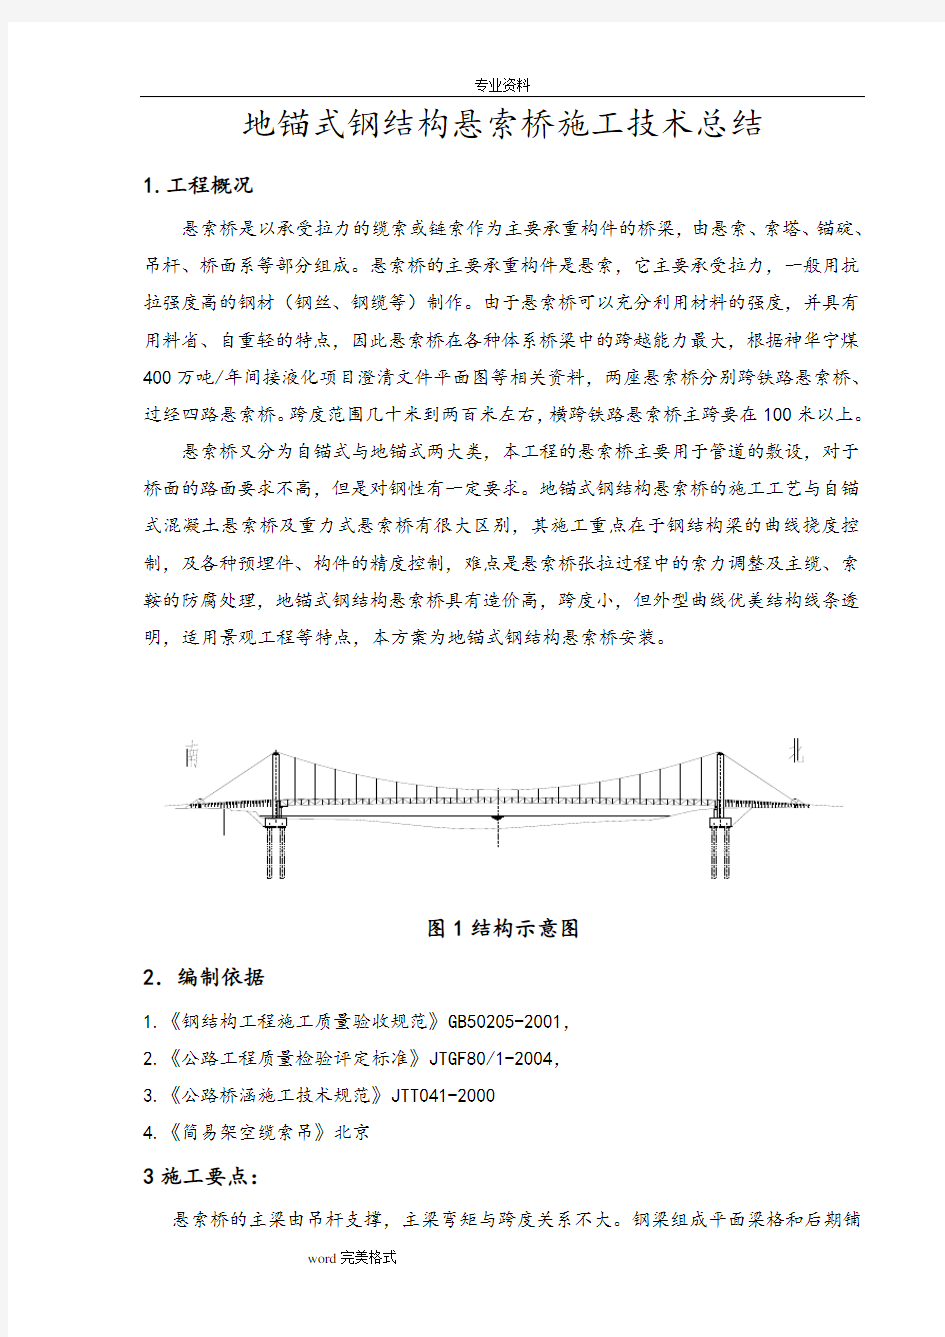 悬索桥工程施工设计方案